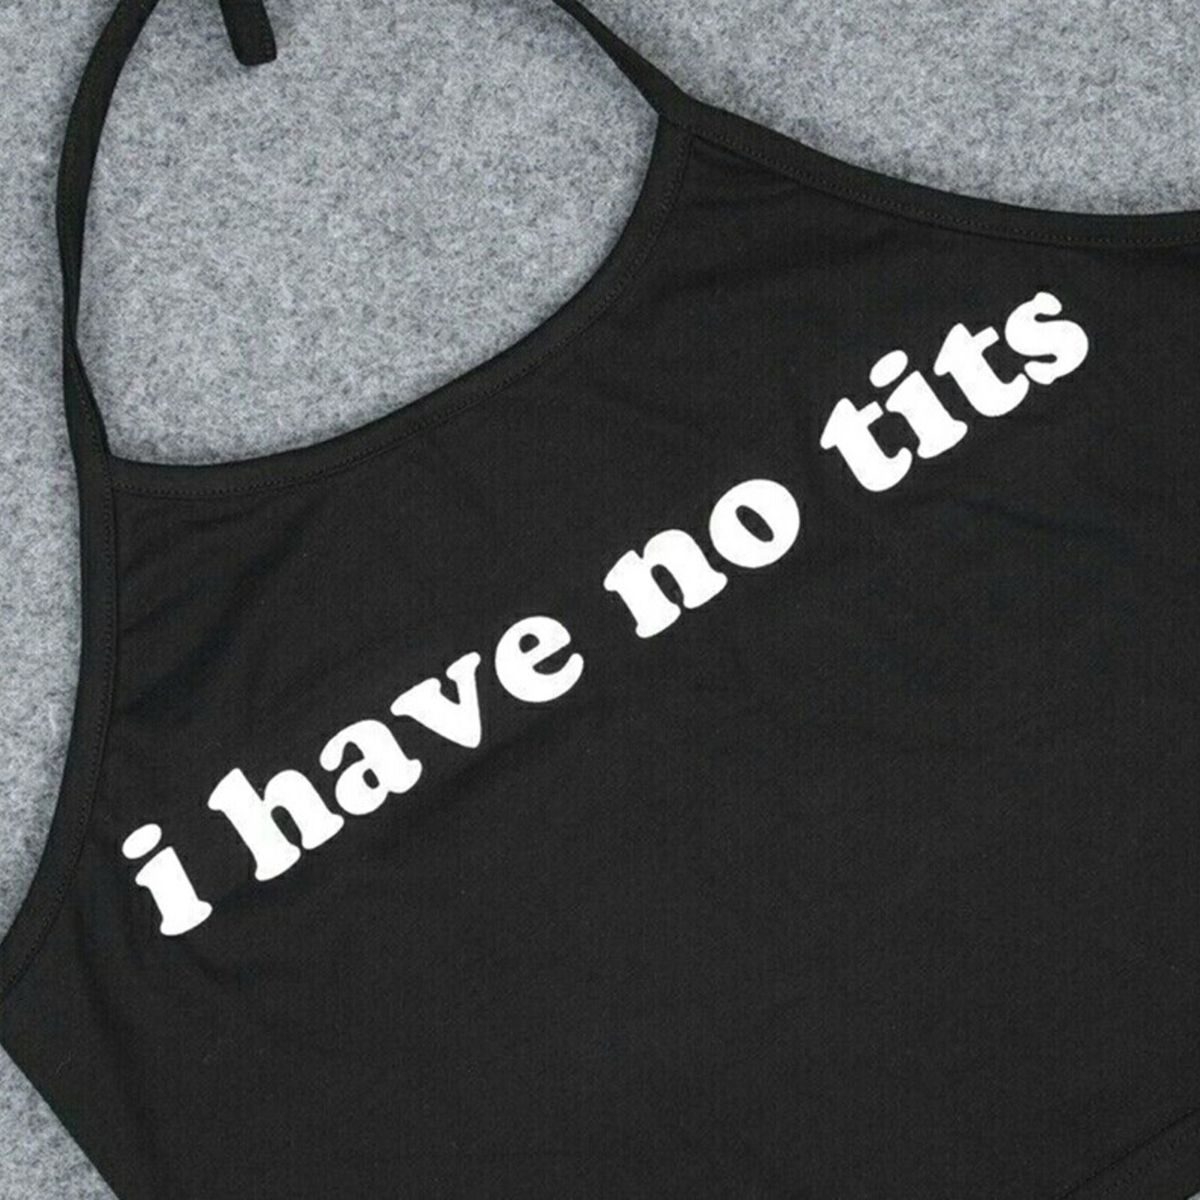 Have No Tits